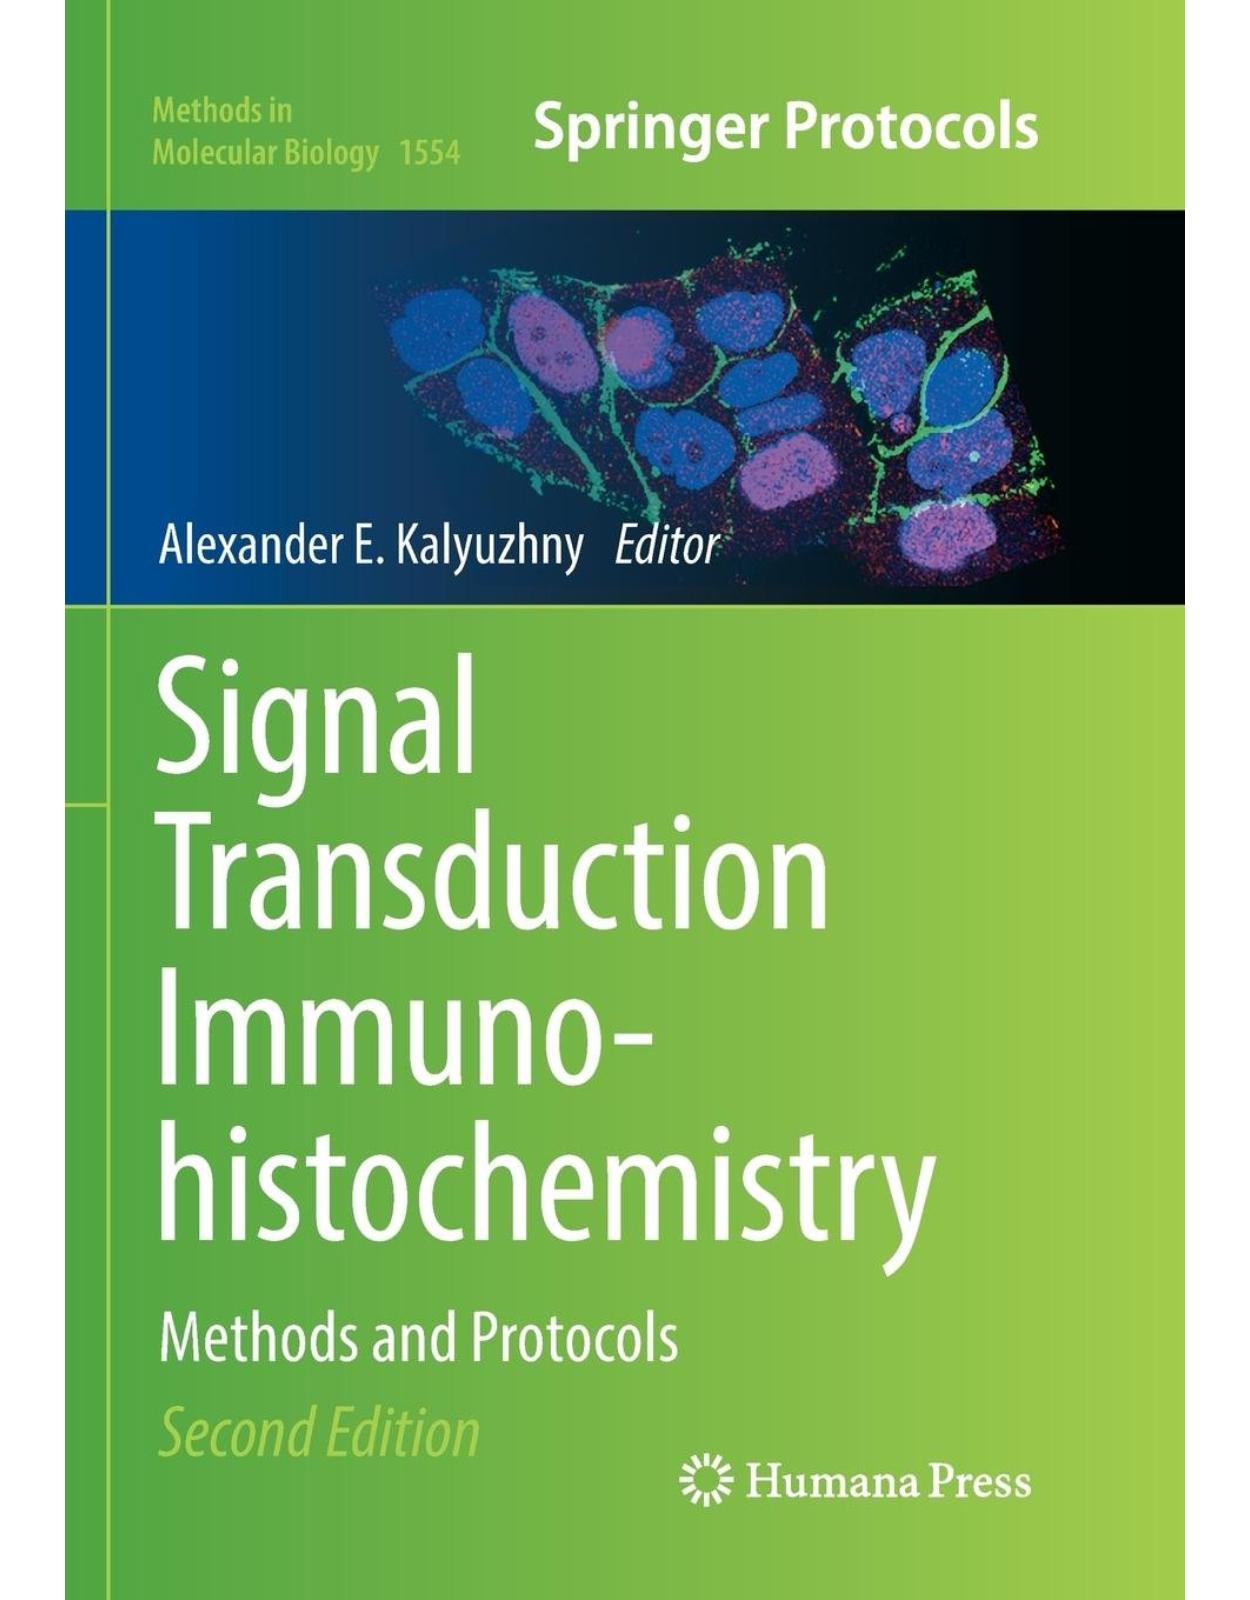 Signal Transduction Immunohistochemistry: Methods and Protocols 